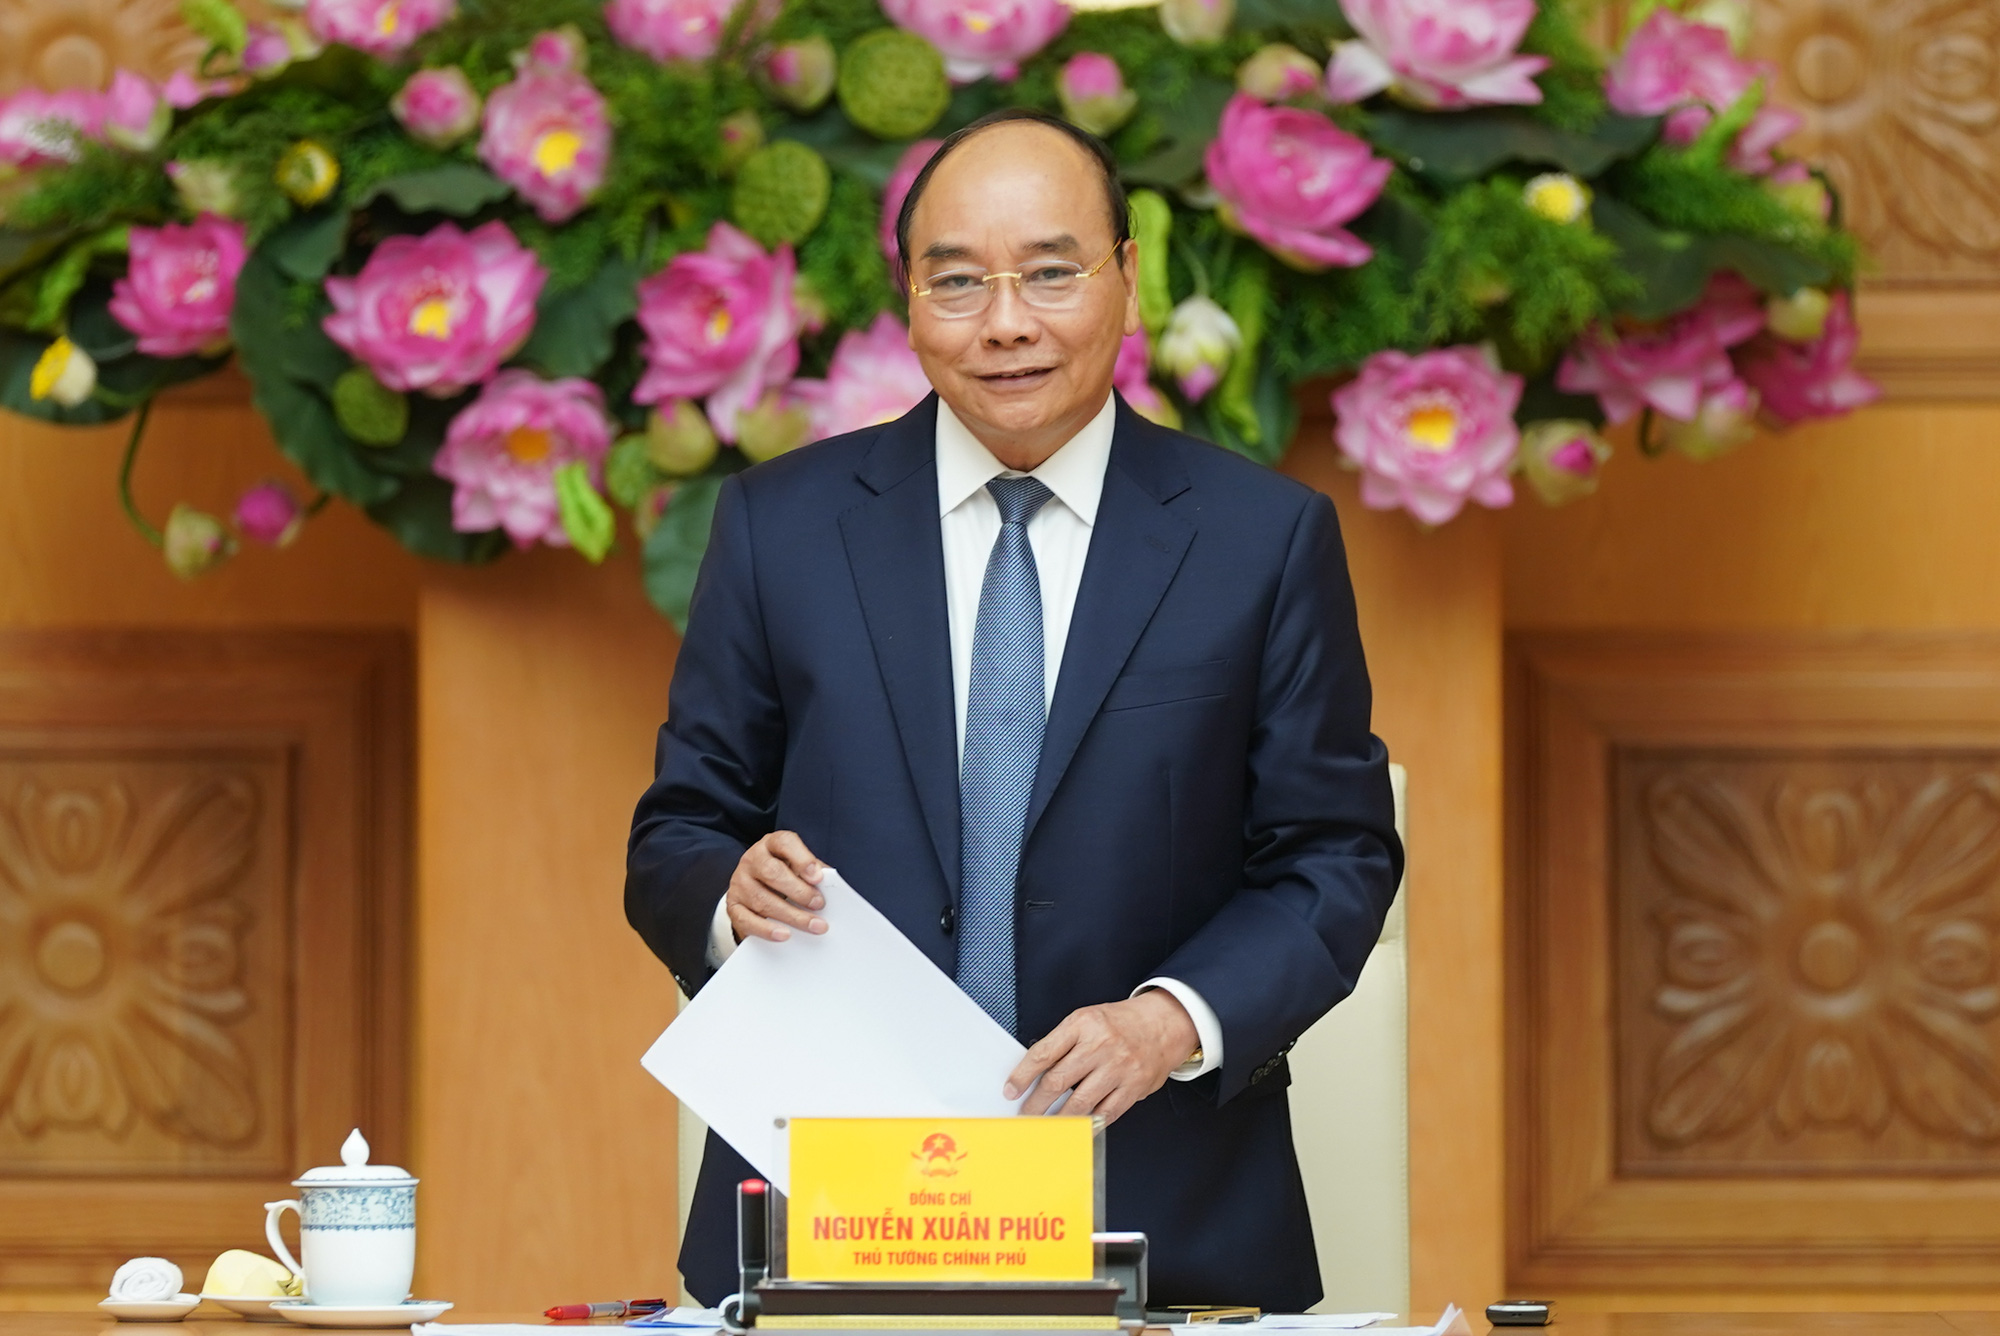 Thủ tướng mong muốn các doanh nghiệp Việt Nam phát triển mạnh mẽ, đứng trên đôi chân của mình trong một nền kinh tế độc lập, tự chủ - Ảnh 1.